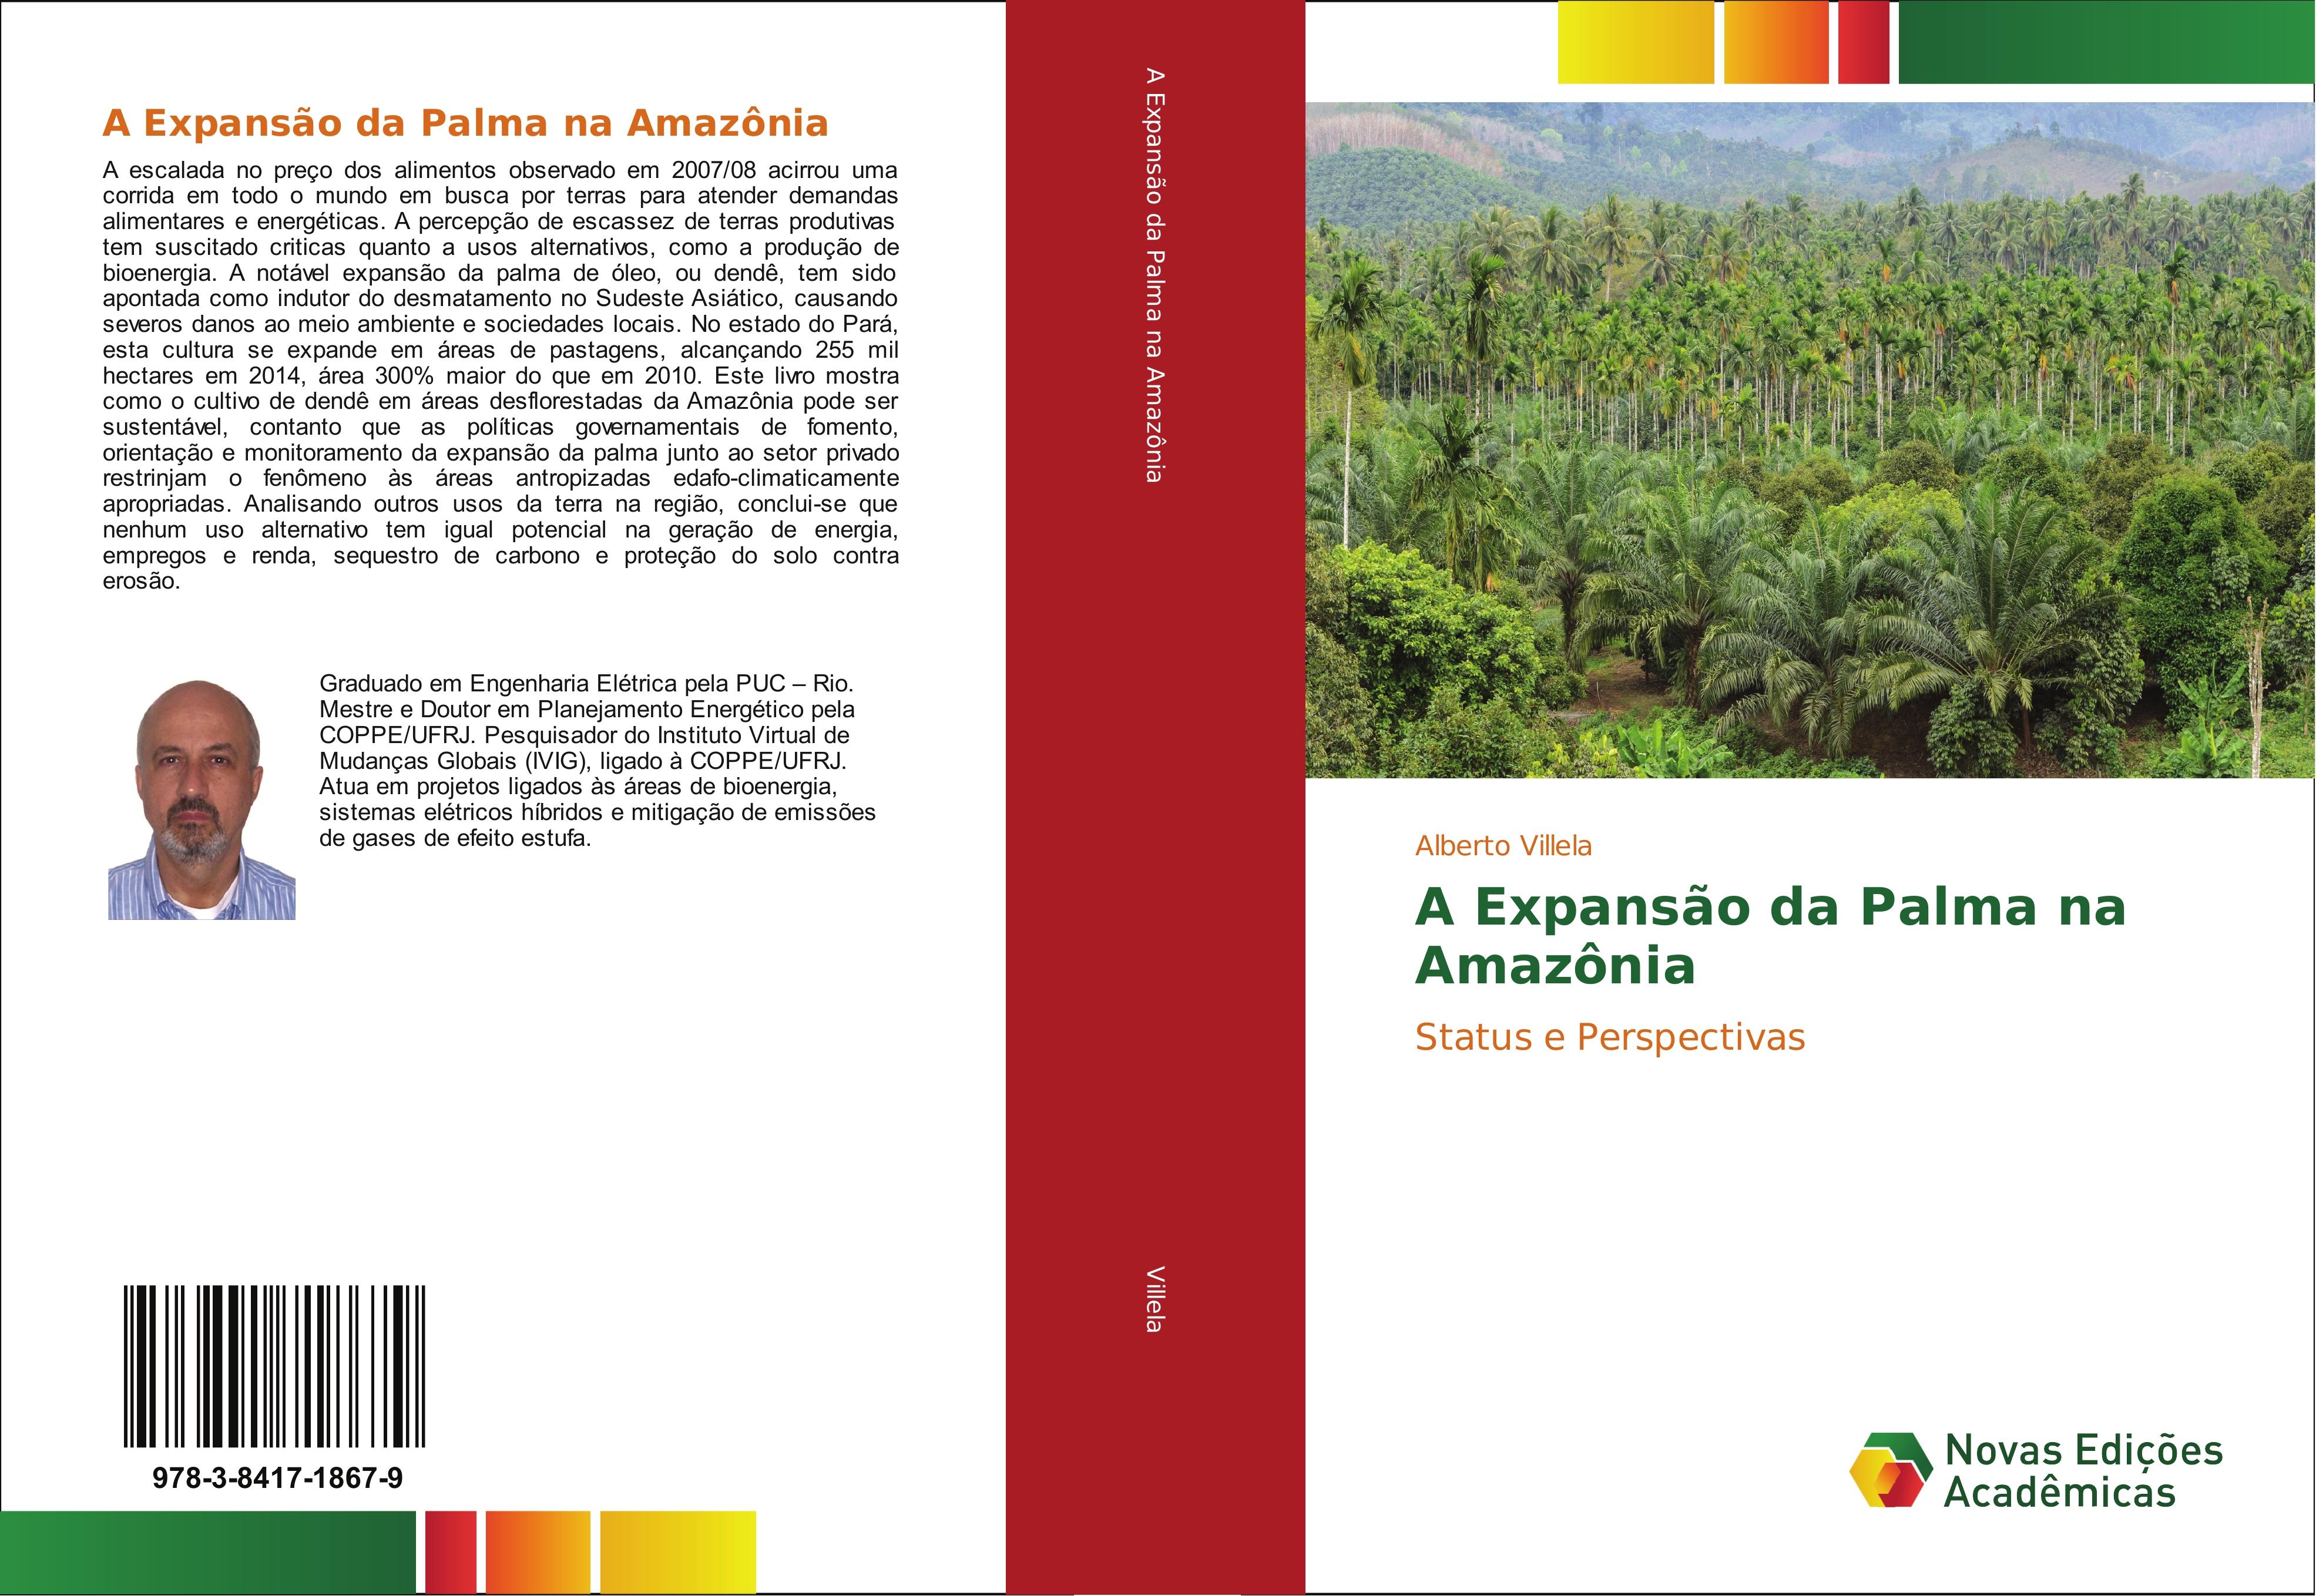 A Expansão da Palma na Amazônia - Alberto Villela